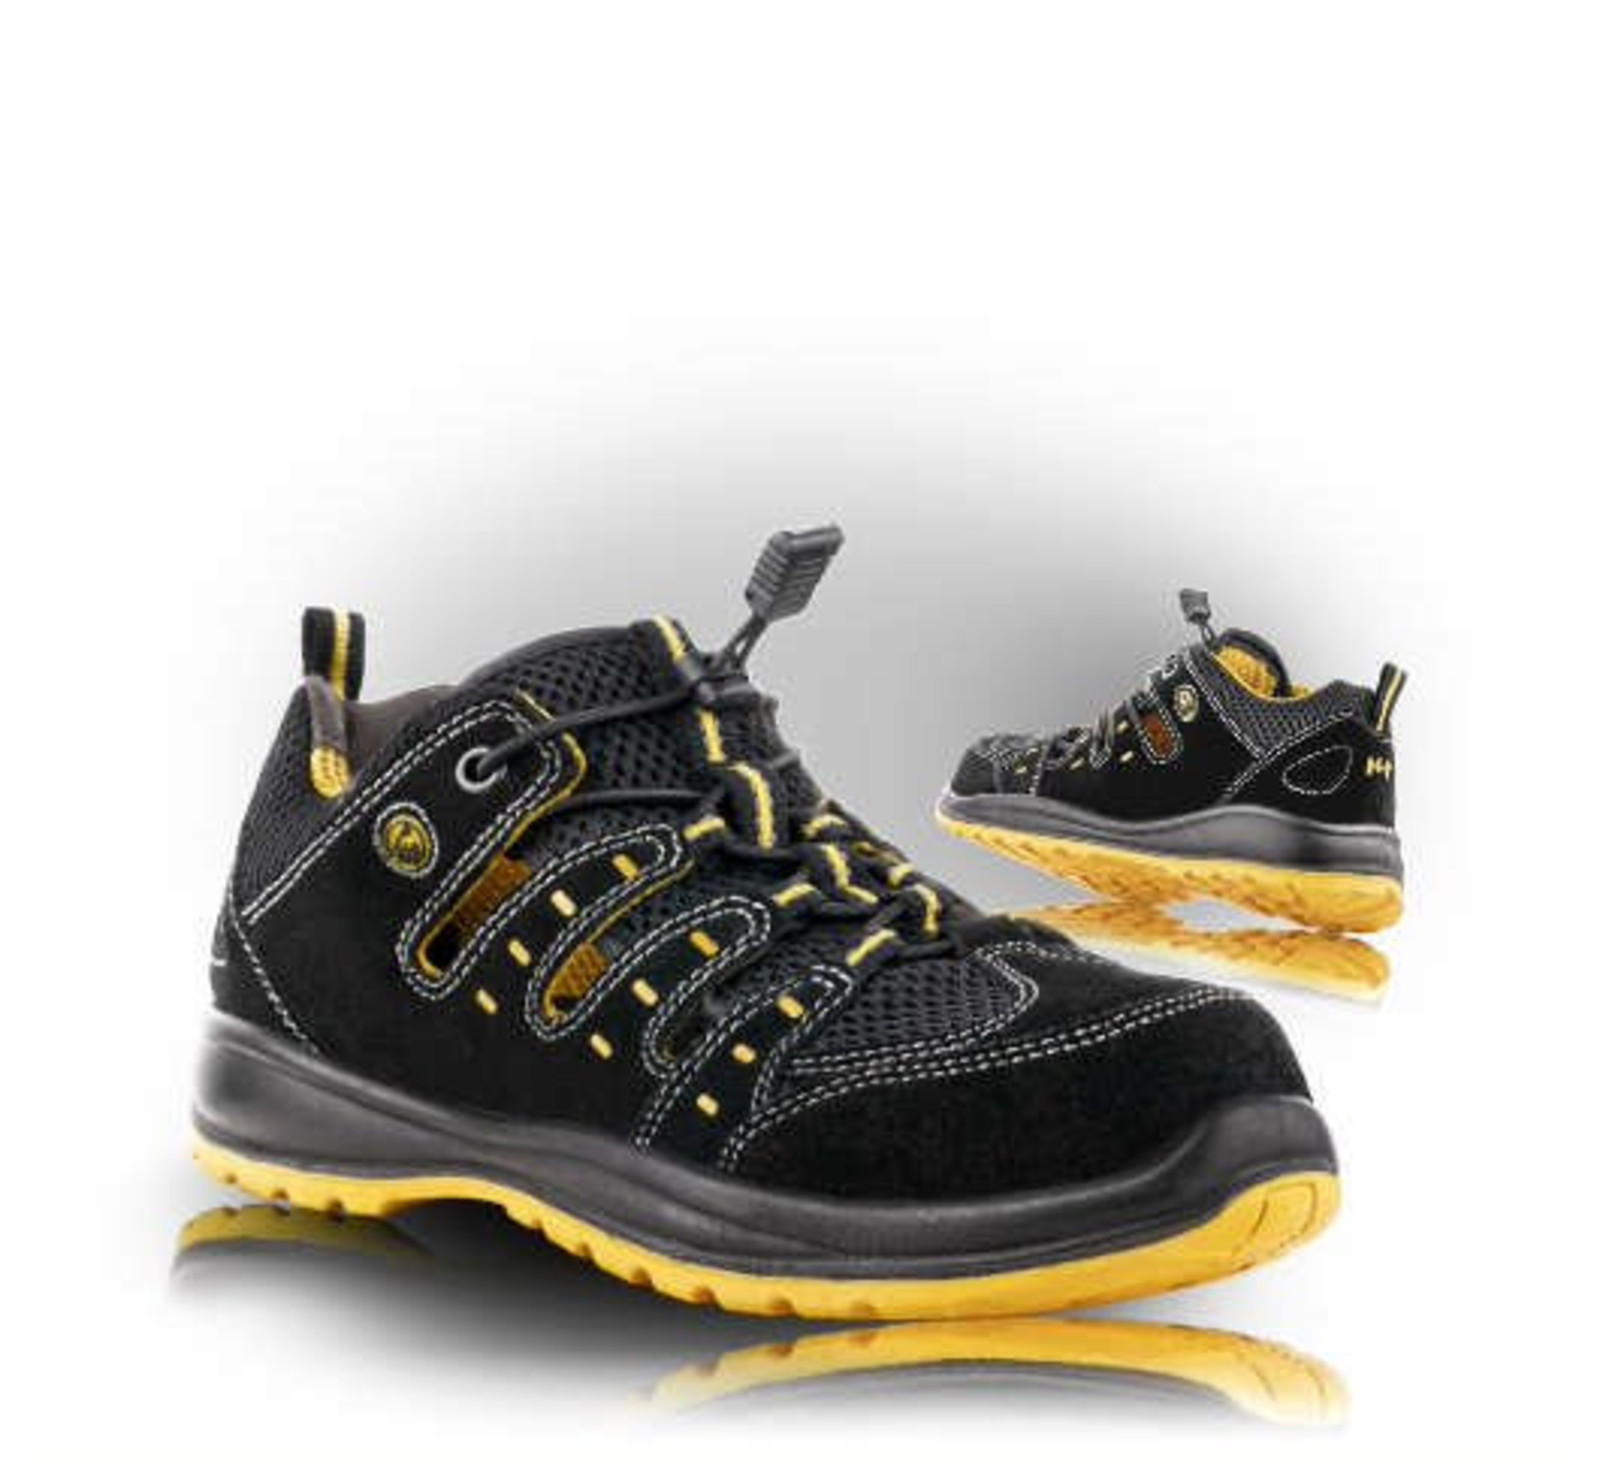 Bezpečnostné sandále Memphis S1 ESD - veľkosť: 46, farba: čierna/žltá